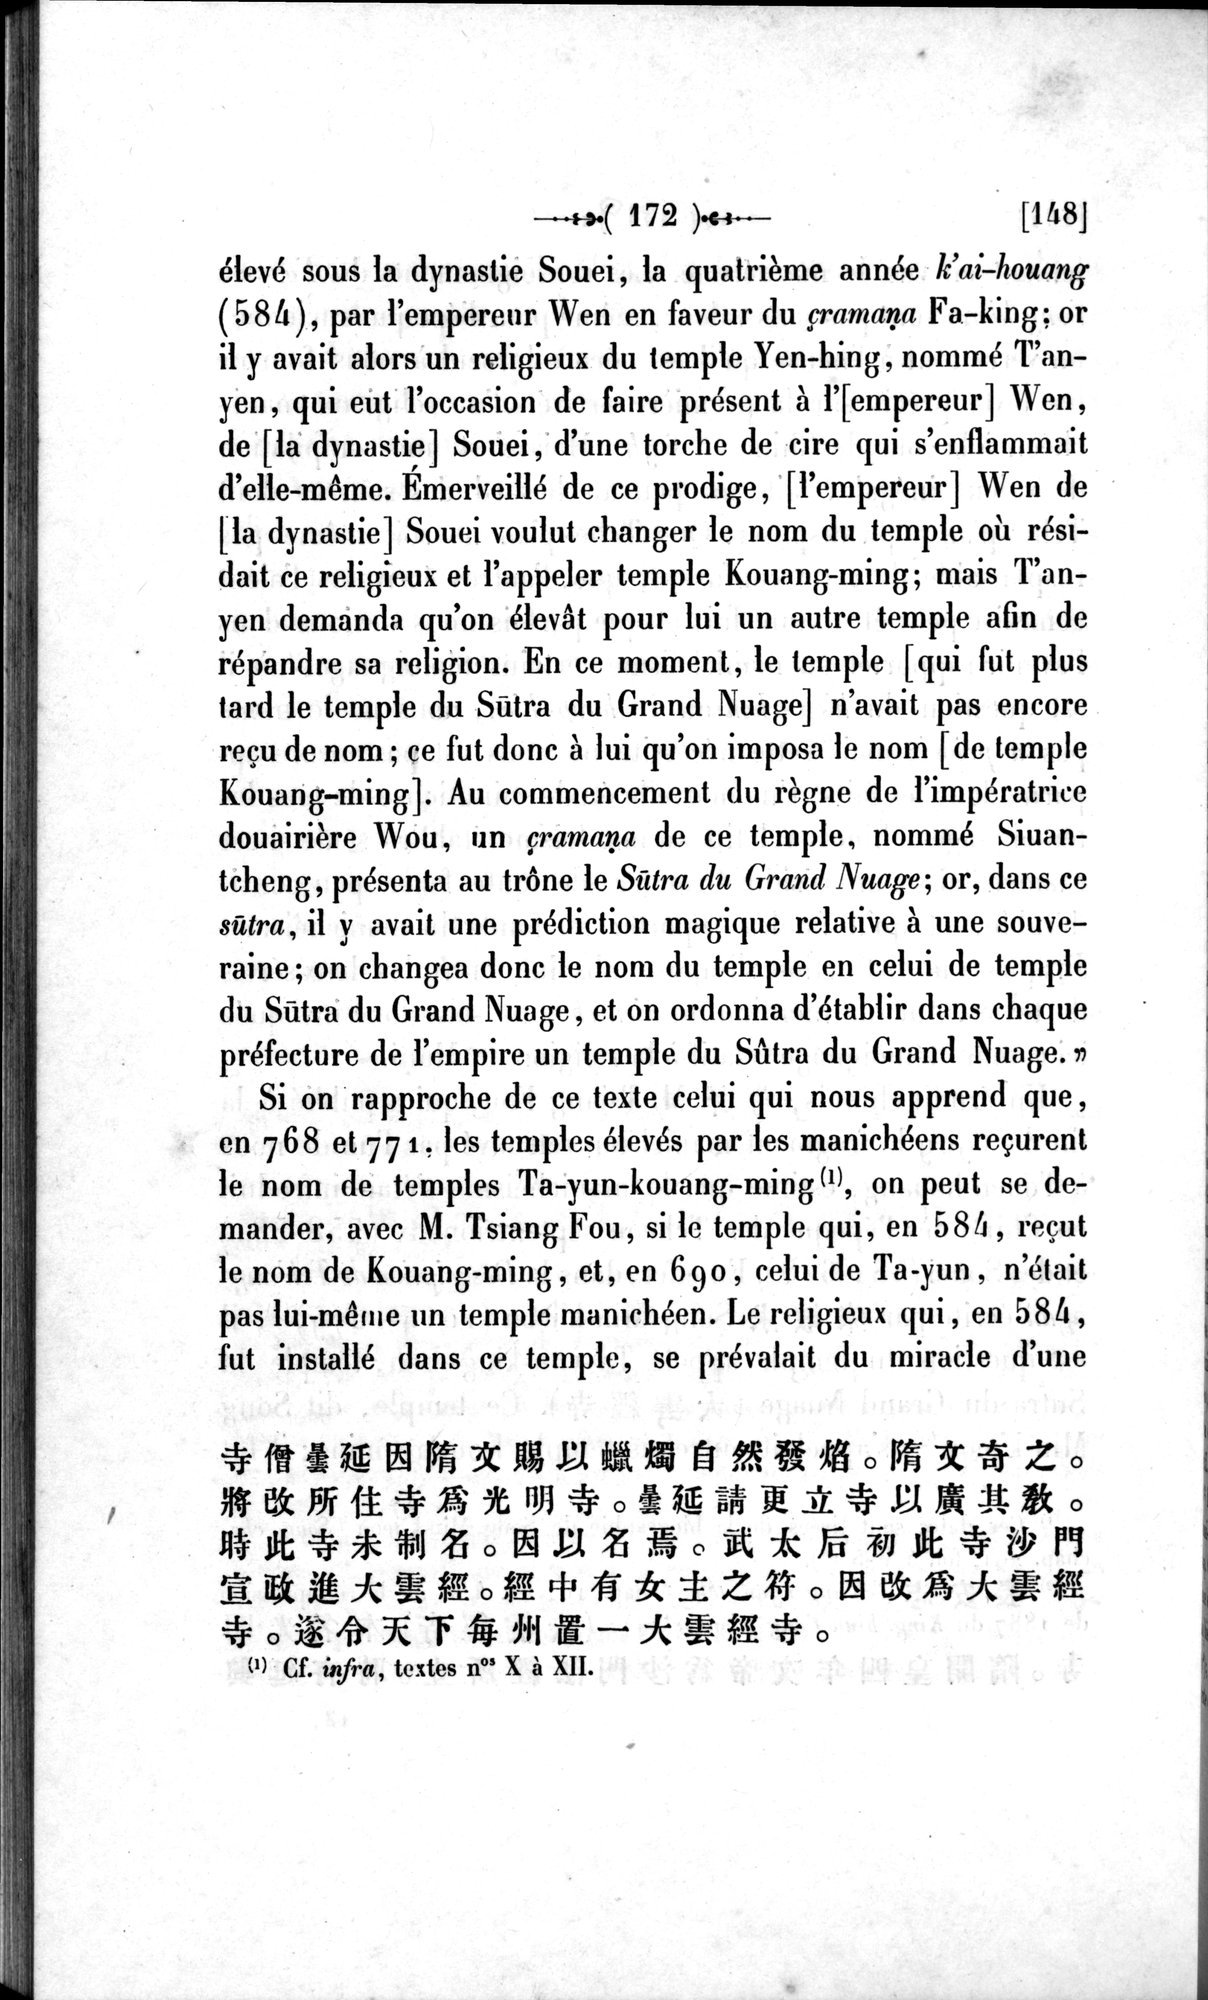 Un traité manichéen retrouvé en Chine : vol.1 / Page 182 (Grayscale High Resolution Image)